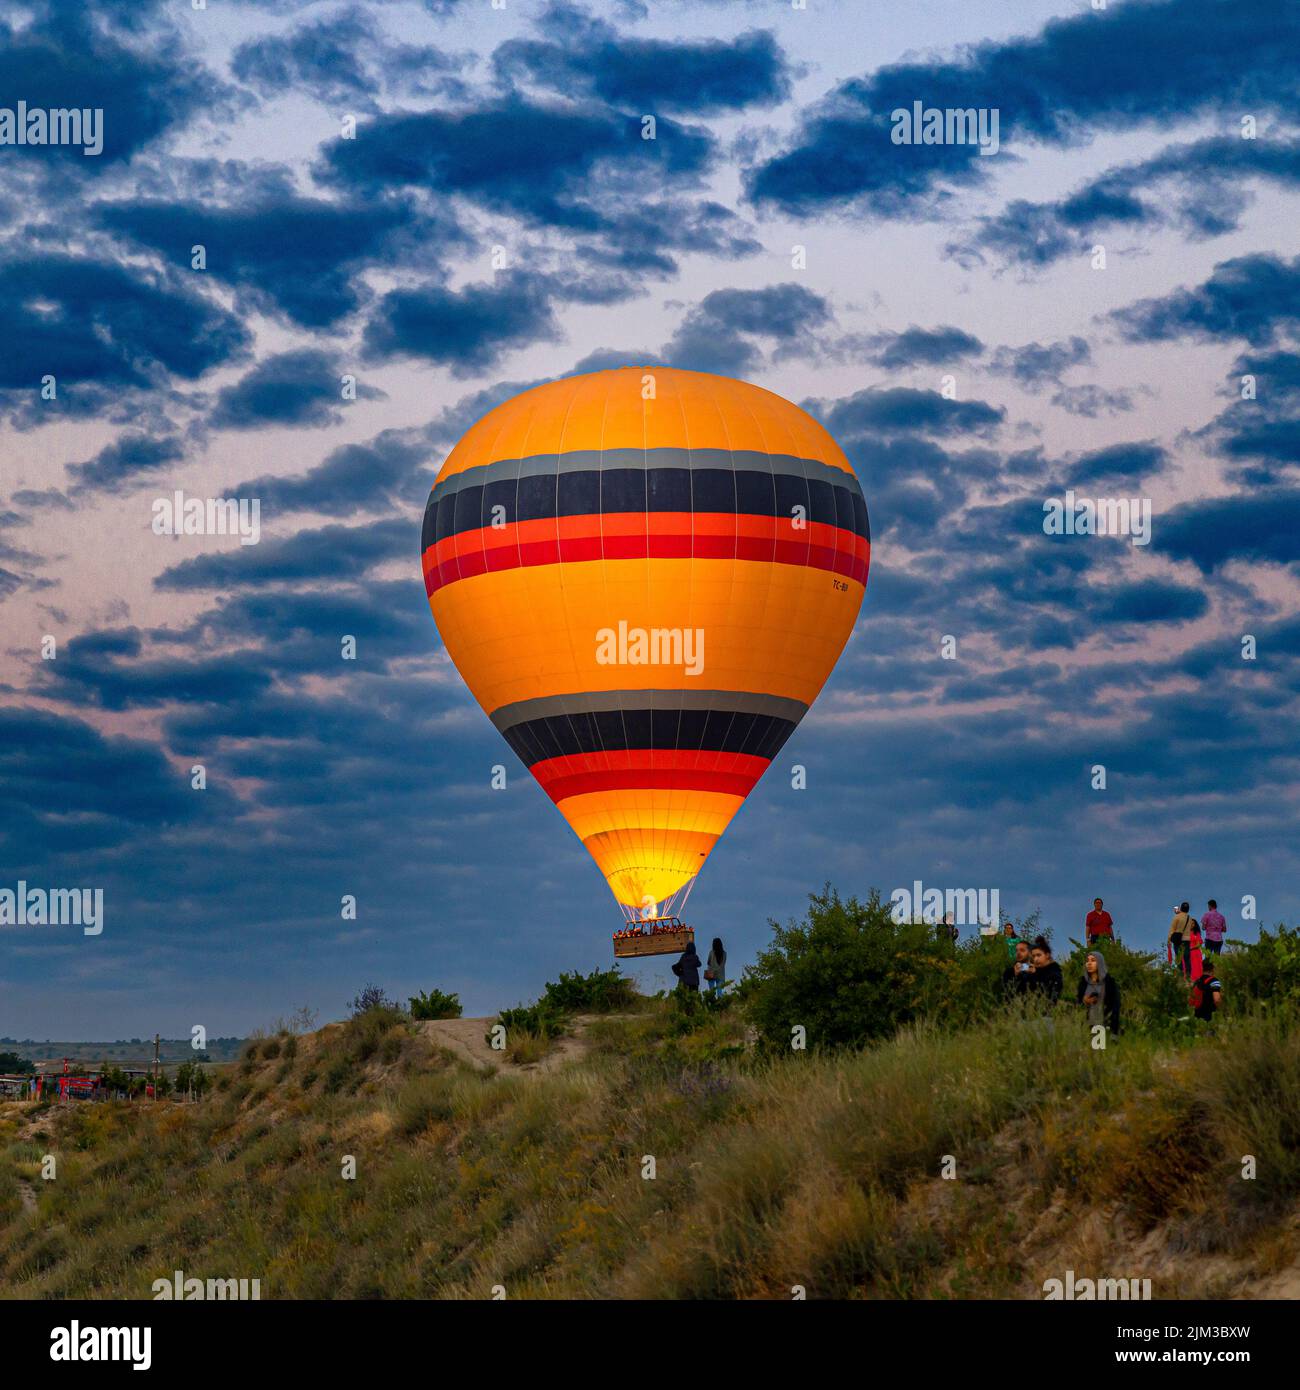 GOREME/TURQUÍA - 30 de junio de 2022: Un globo aerostático vuela sobre los turistas cerca de las colinas de goreme. Foto de stock